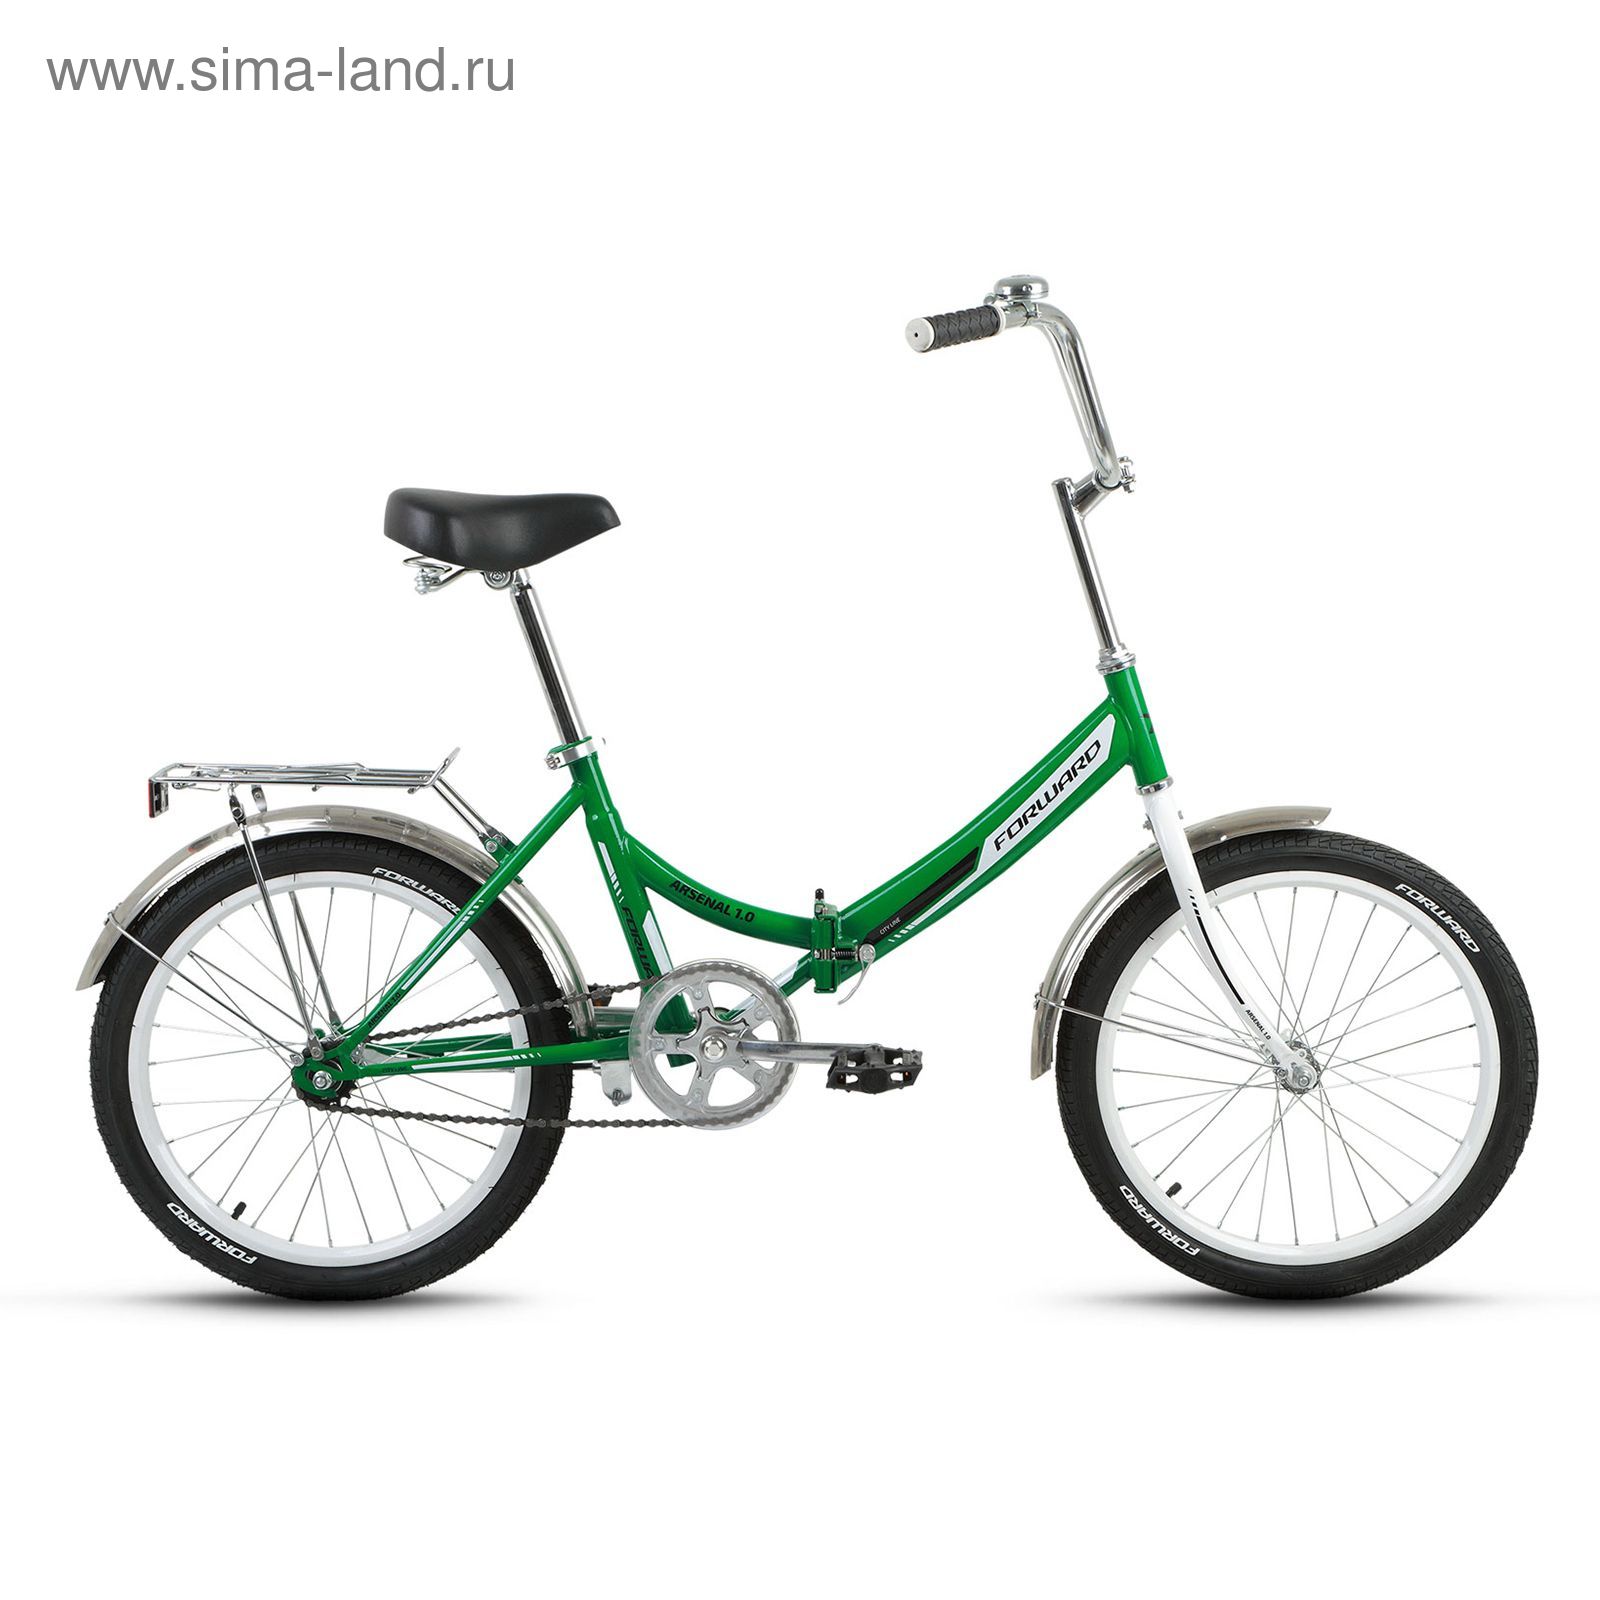 Велосипед 20" Forward Arsenal 1.0, 2017, цвет зеленый, размер 14"